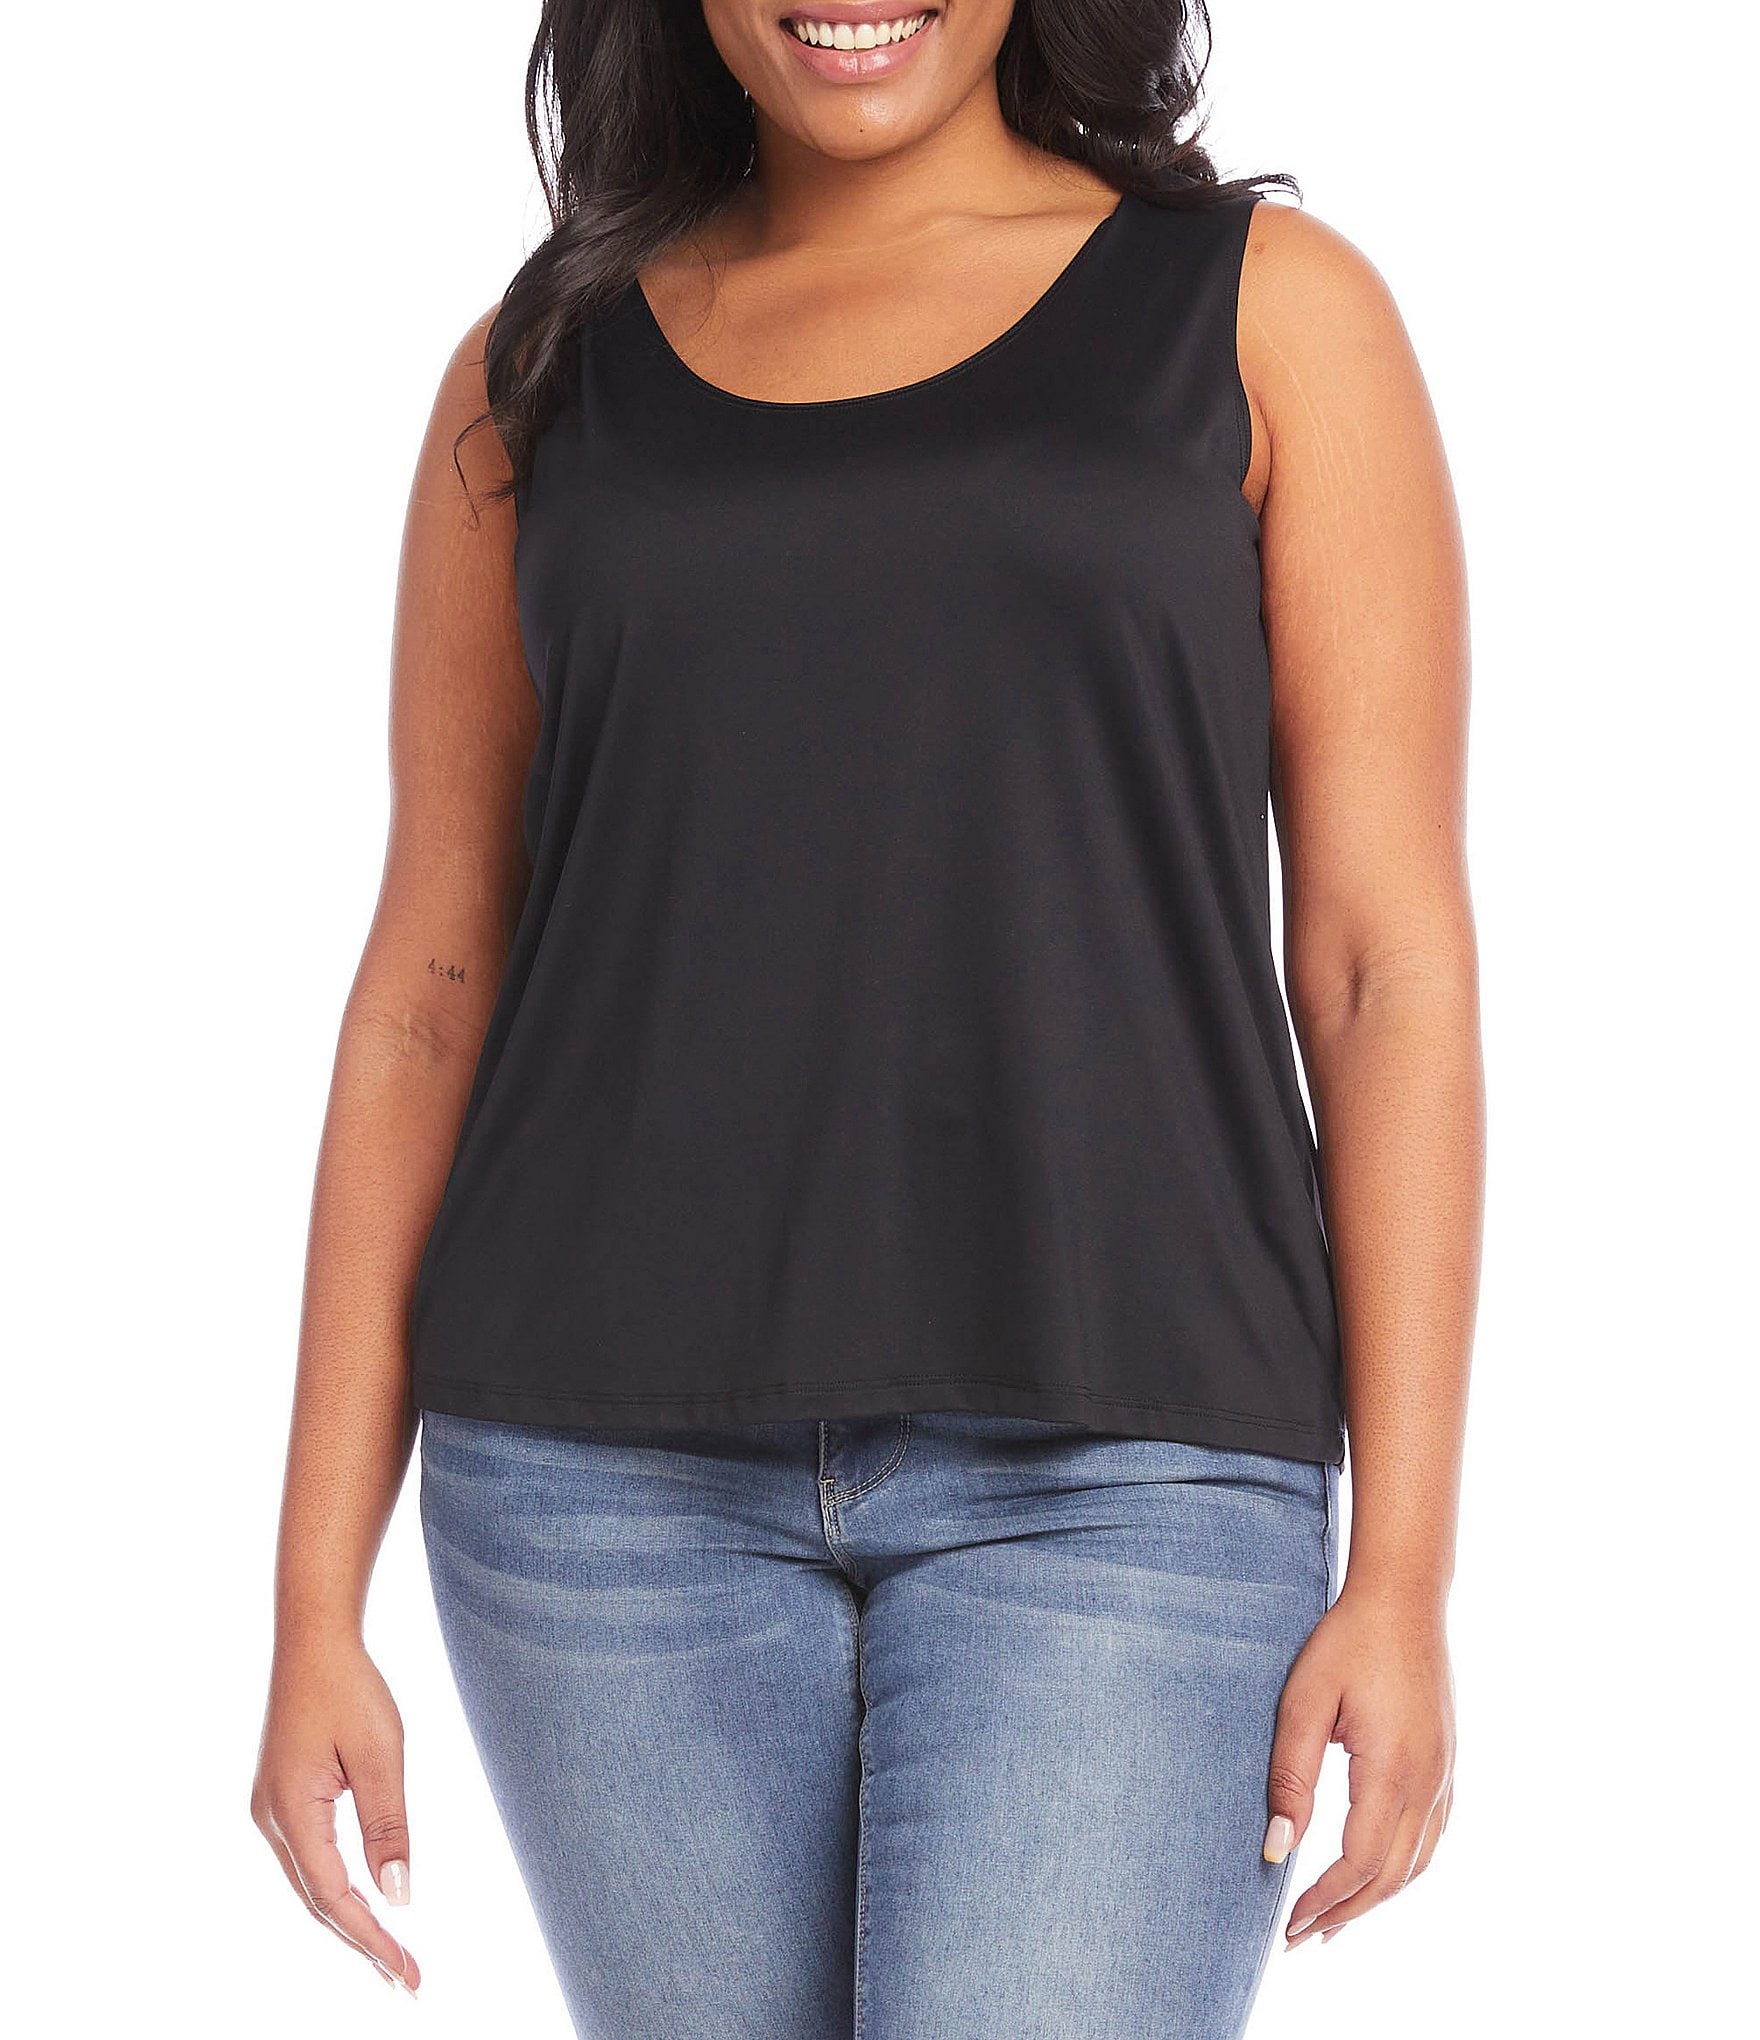 sleeveless blouse: Women's Plus Size Clothing